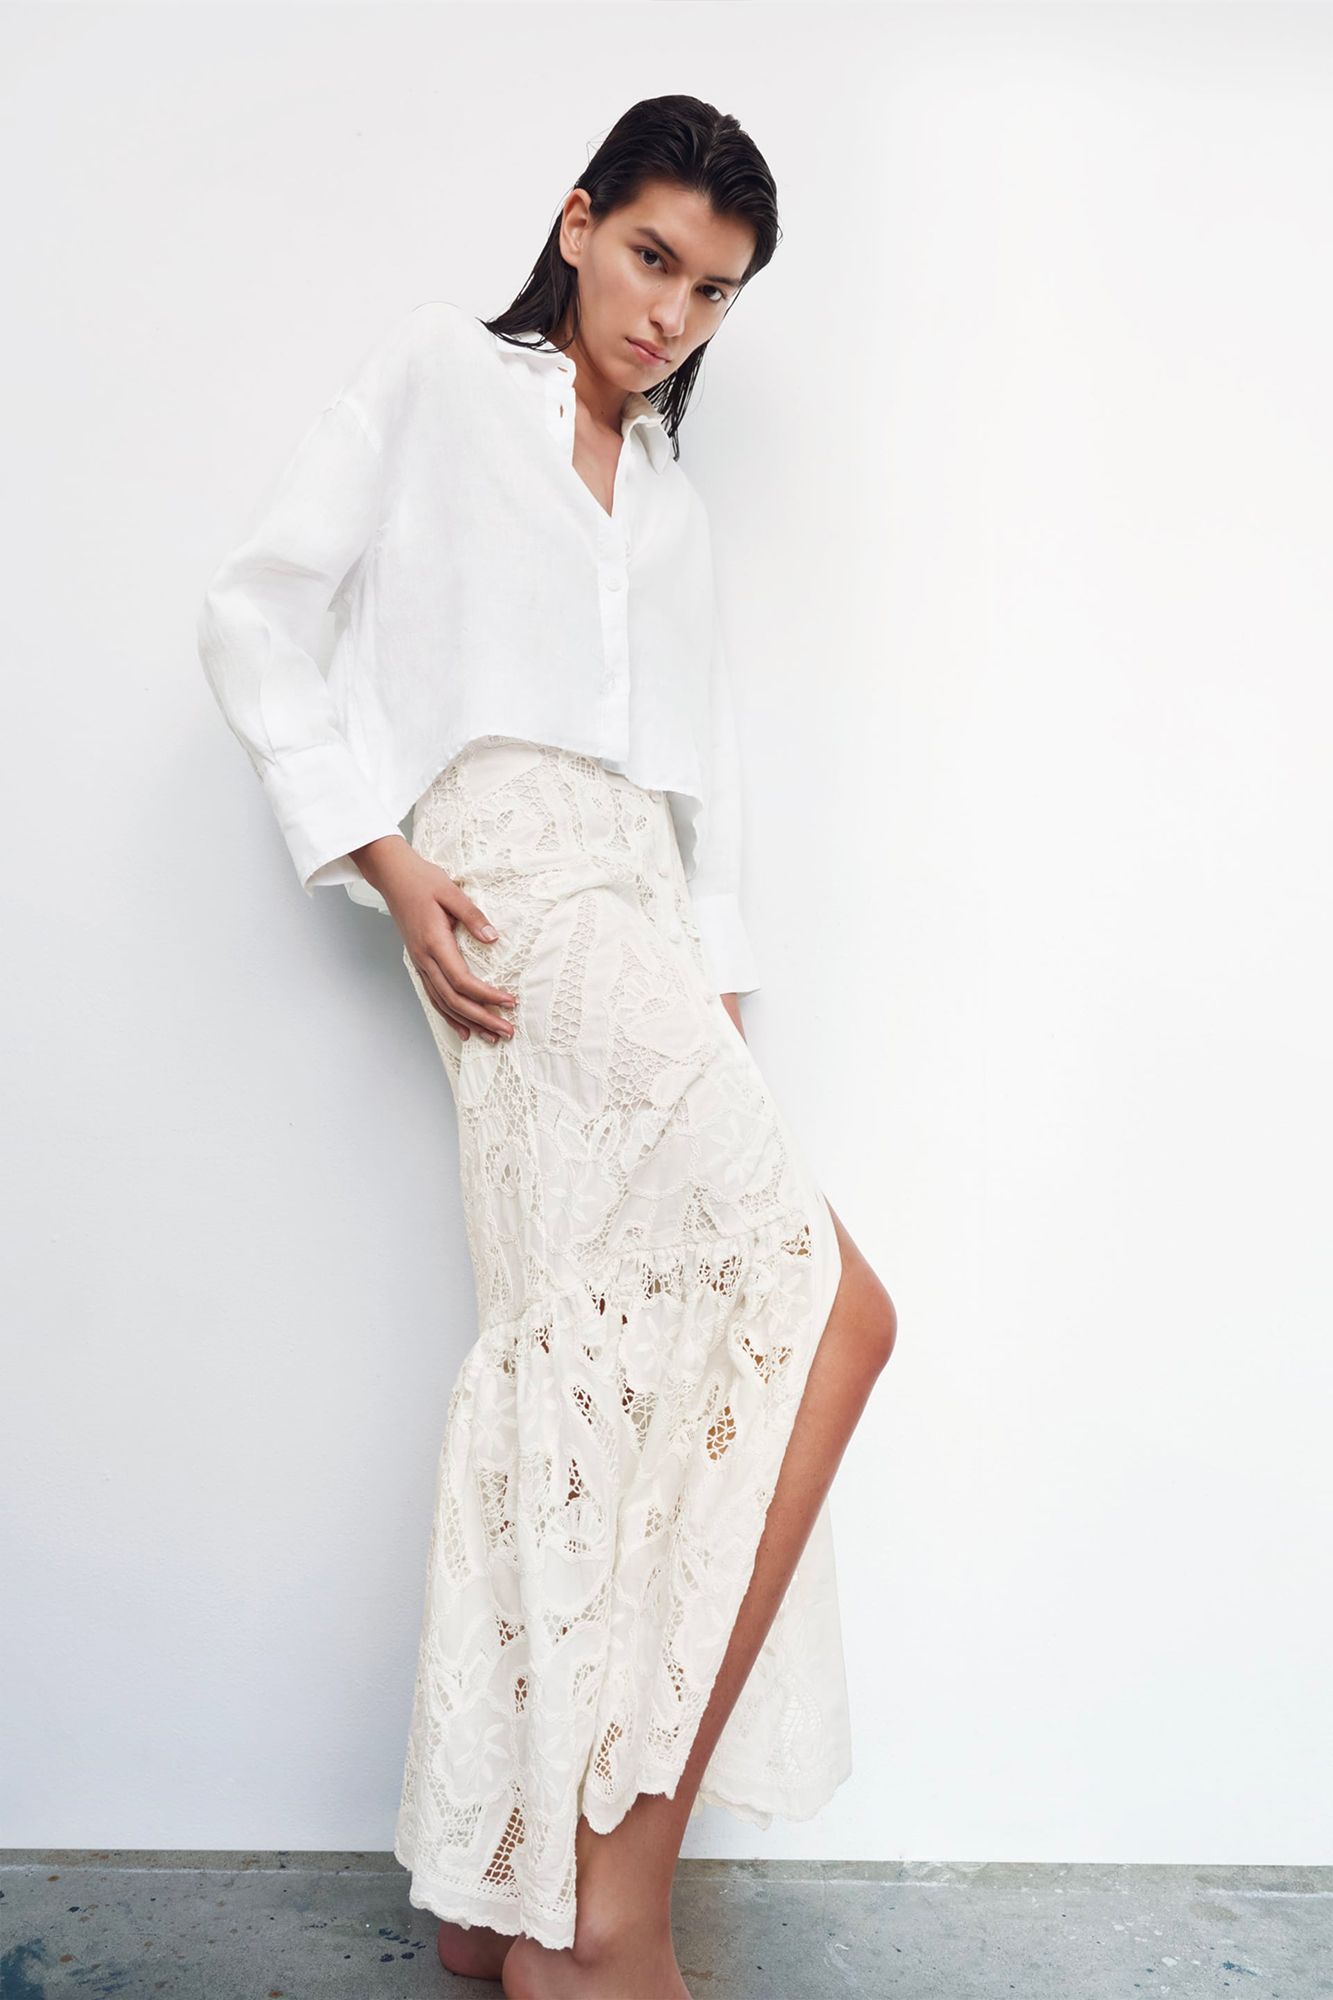 Empleador Combatiente lona Lo mejor de Zara: Esta falda larga blanca bordada perforada